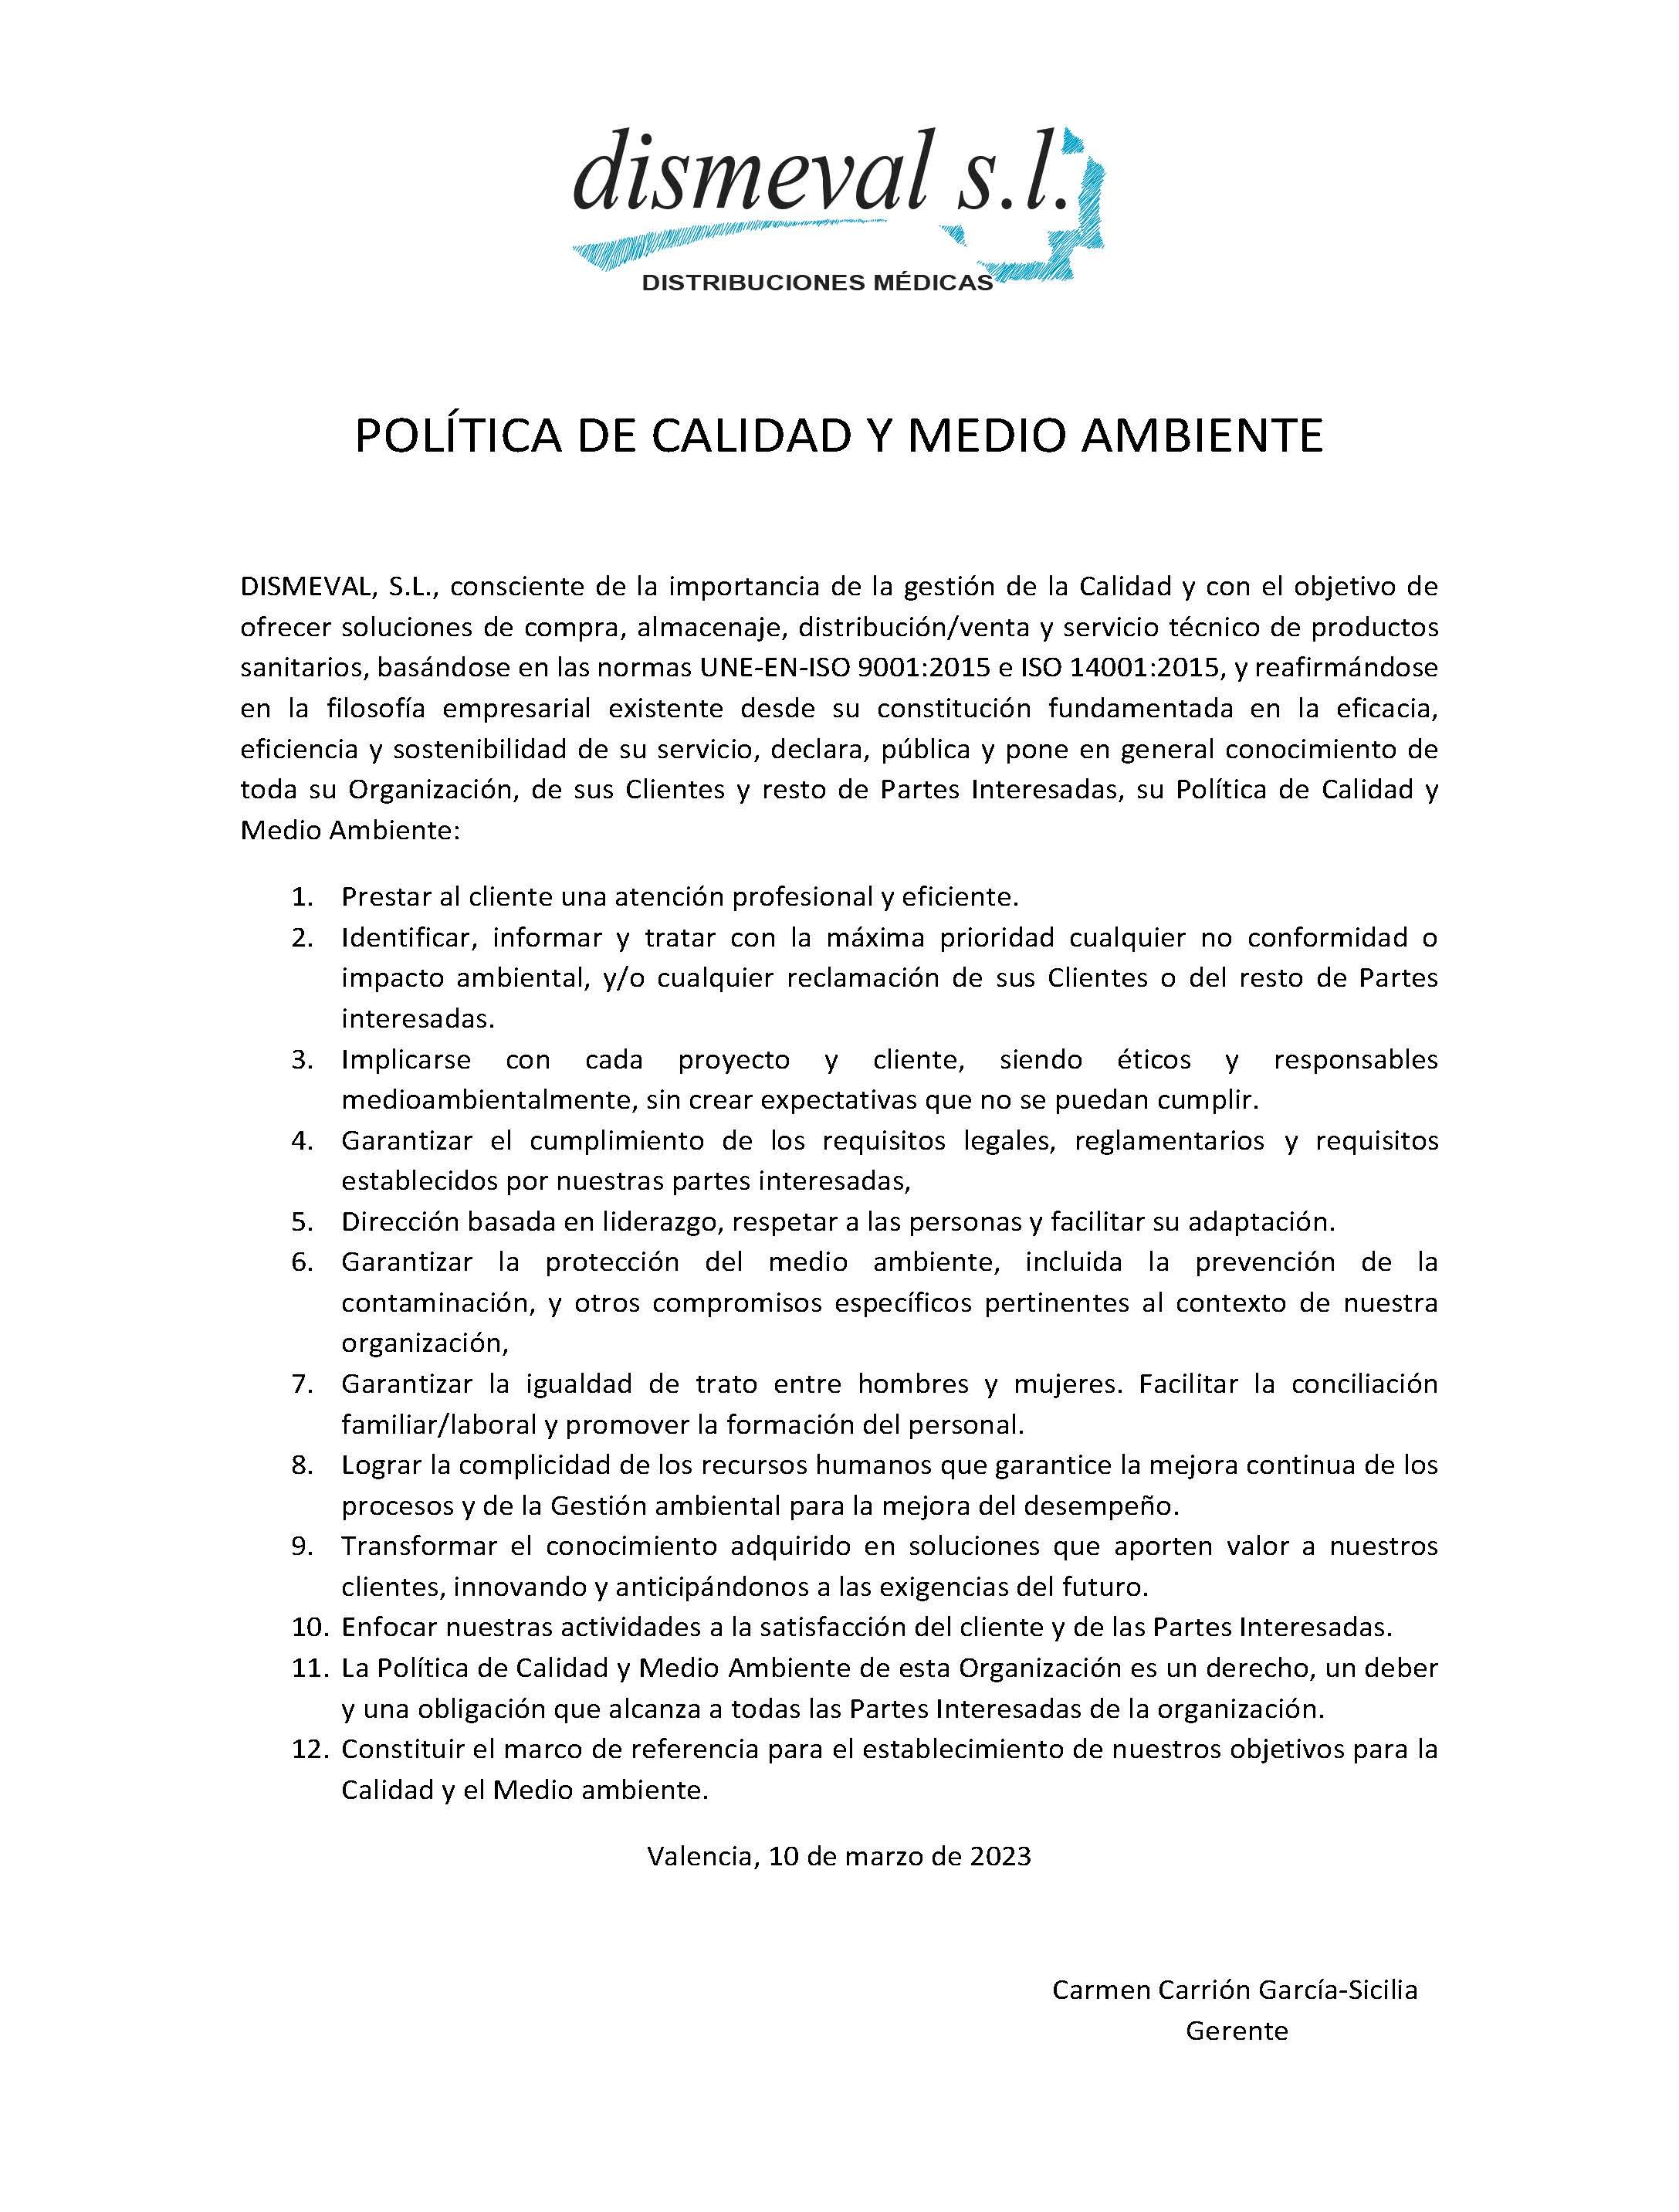 POLÍTICA DE LA CALIDAD Y MEDIO AMBIENTE DISMEVAL